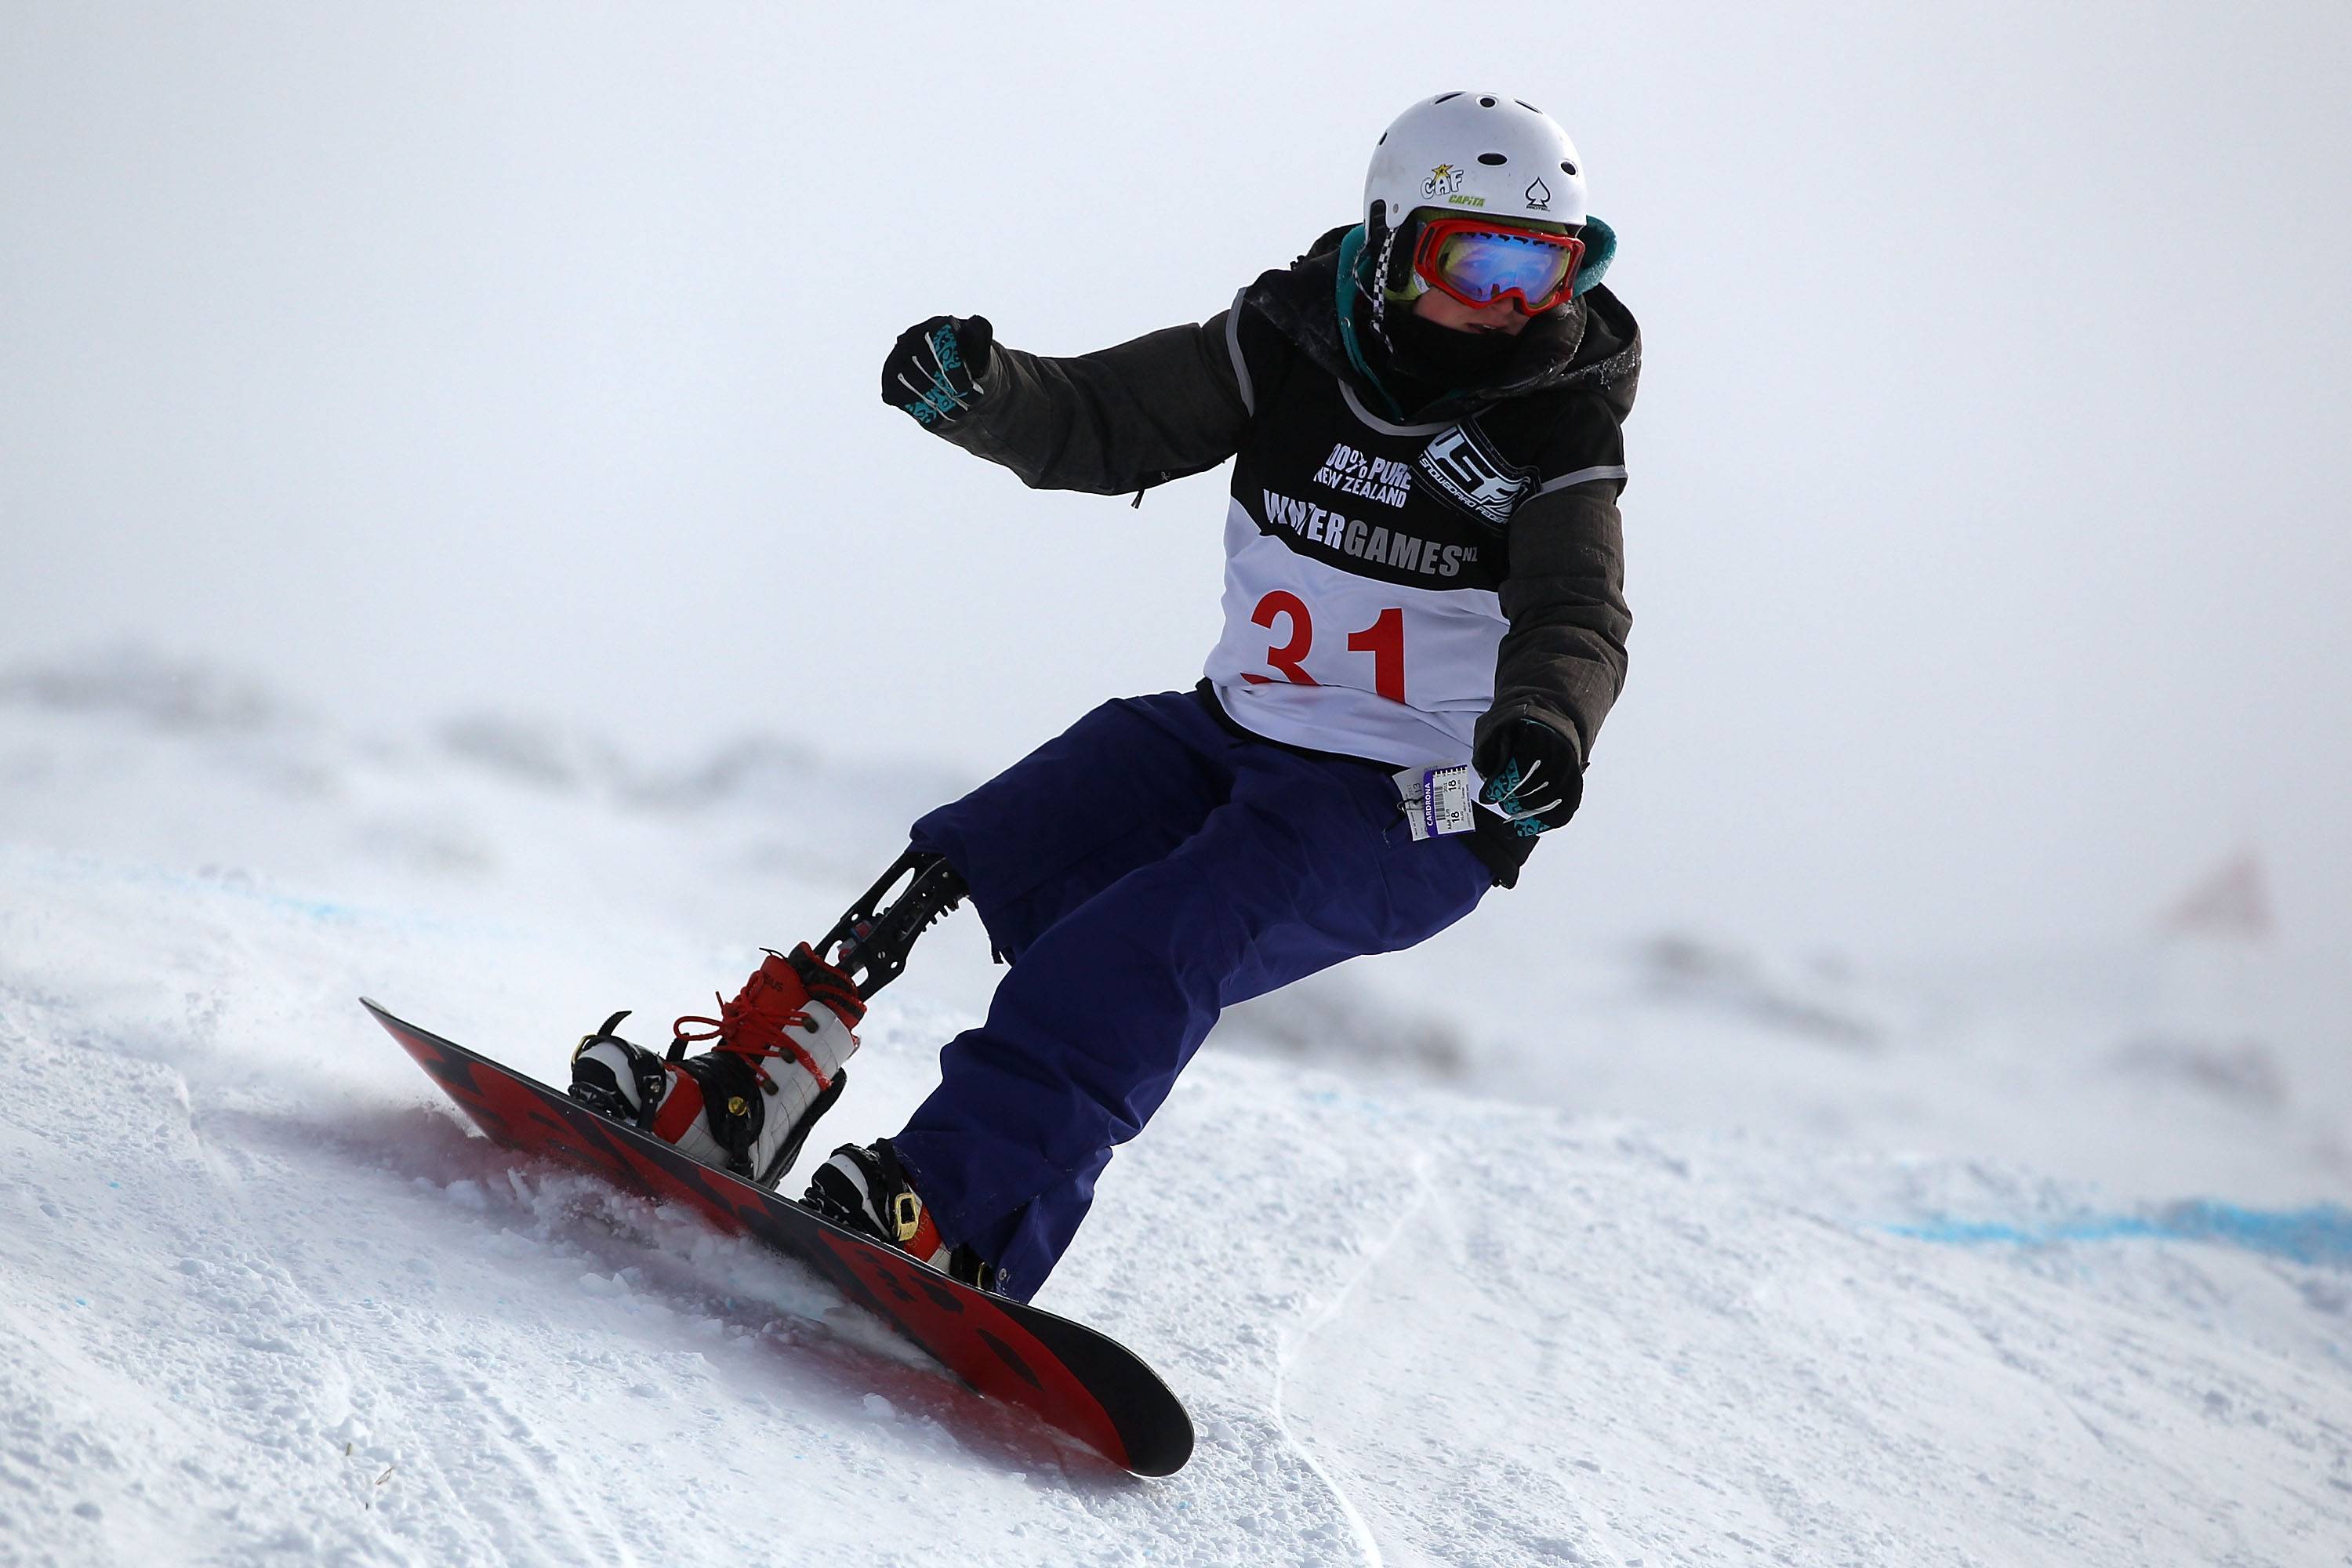 Пара-сноубординг. соревнования и трасса. значение и особенности | japanbi.ru